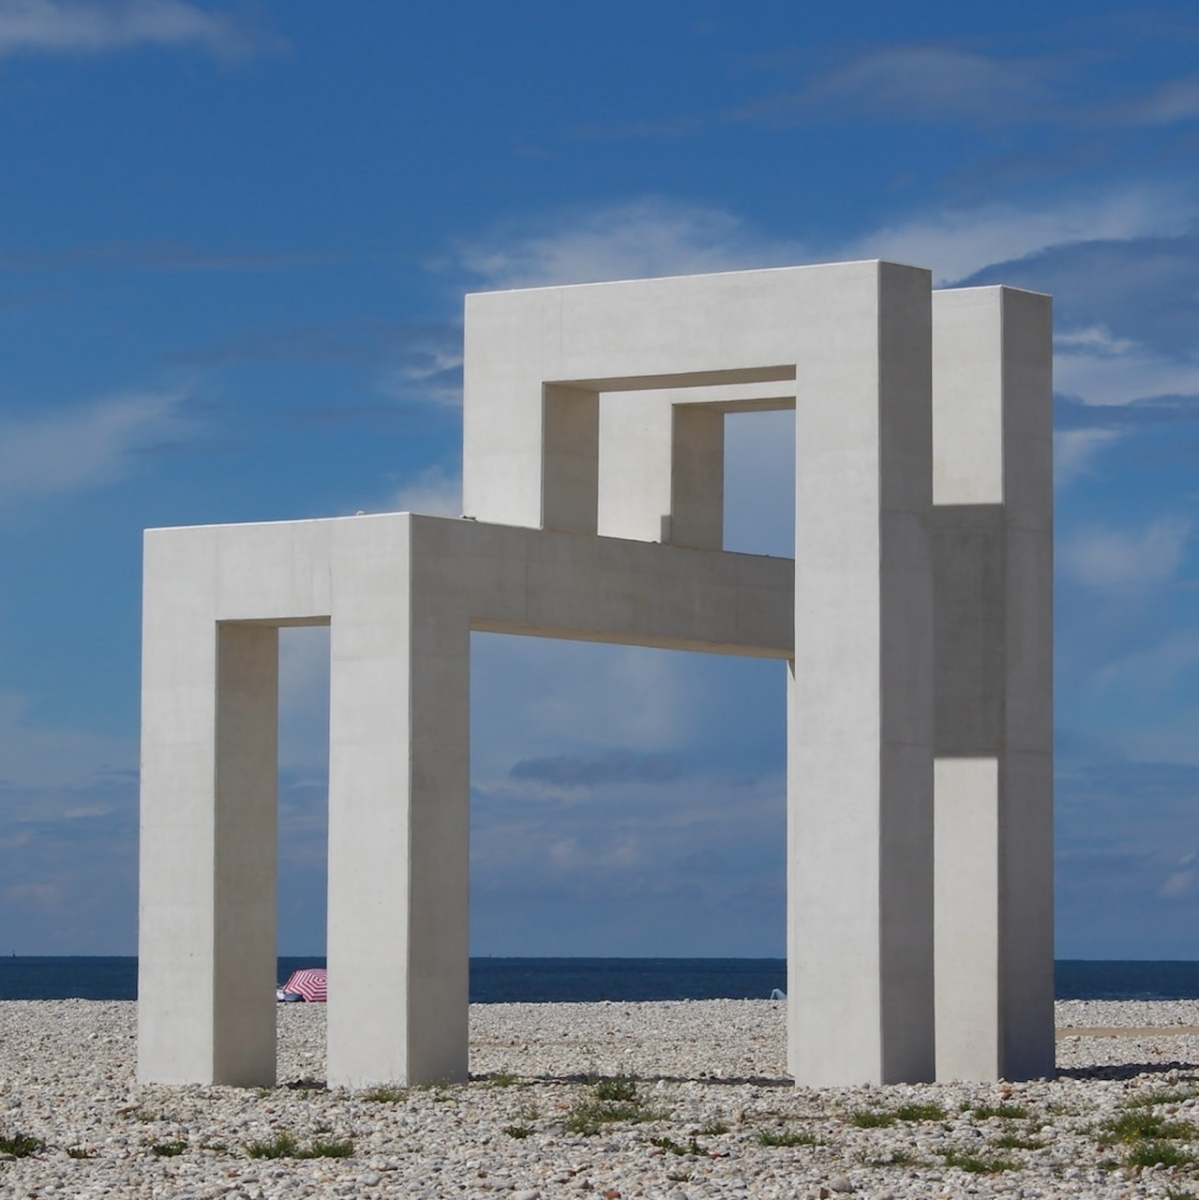 Eine weitere Baustelle am Strand von Le Havre - Monument LH (Le Havre)